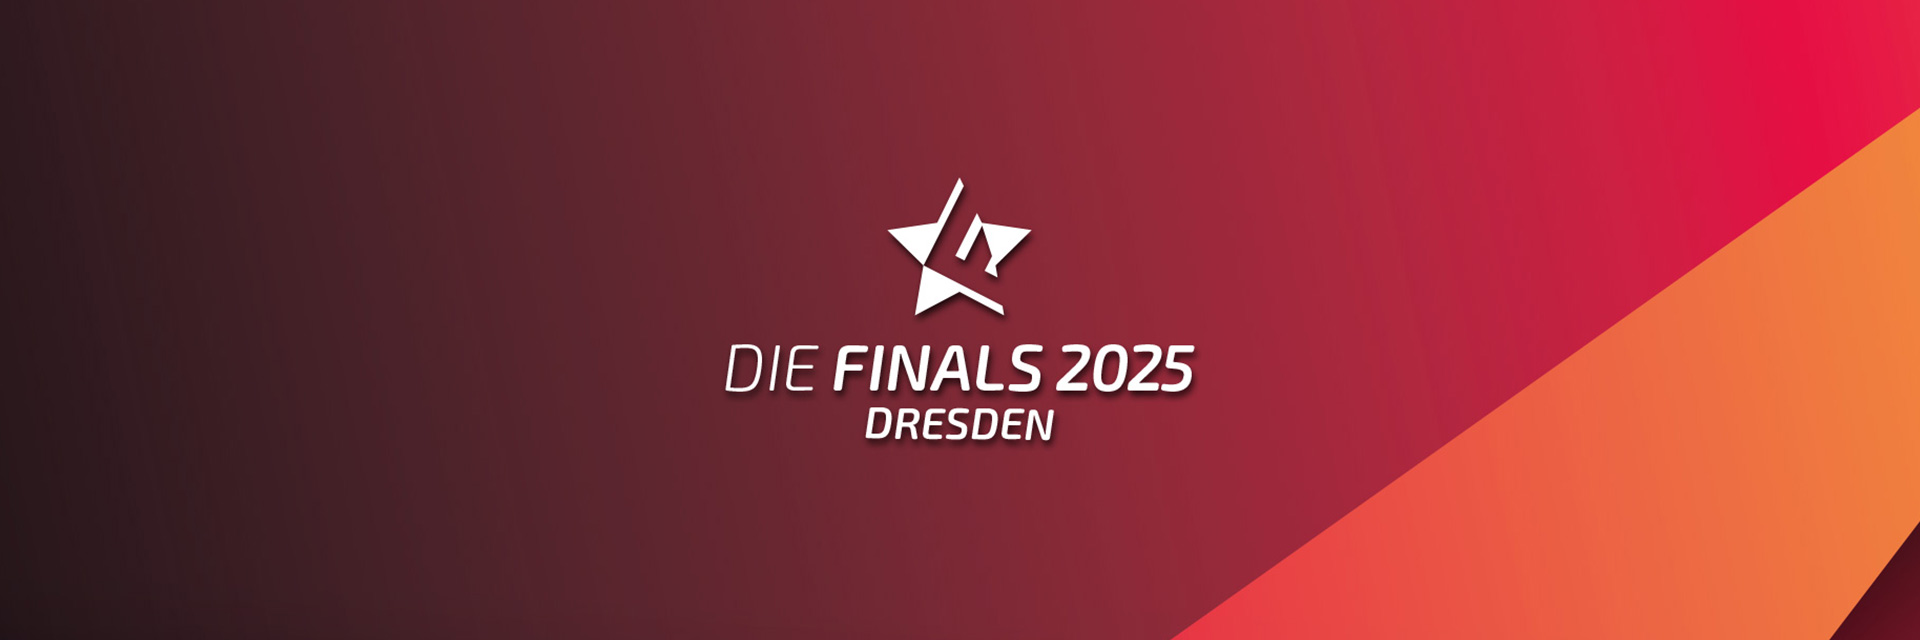 Die Finals 2025 Dresden